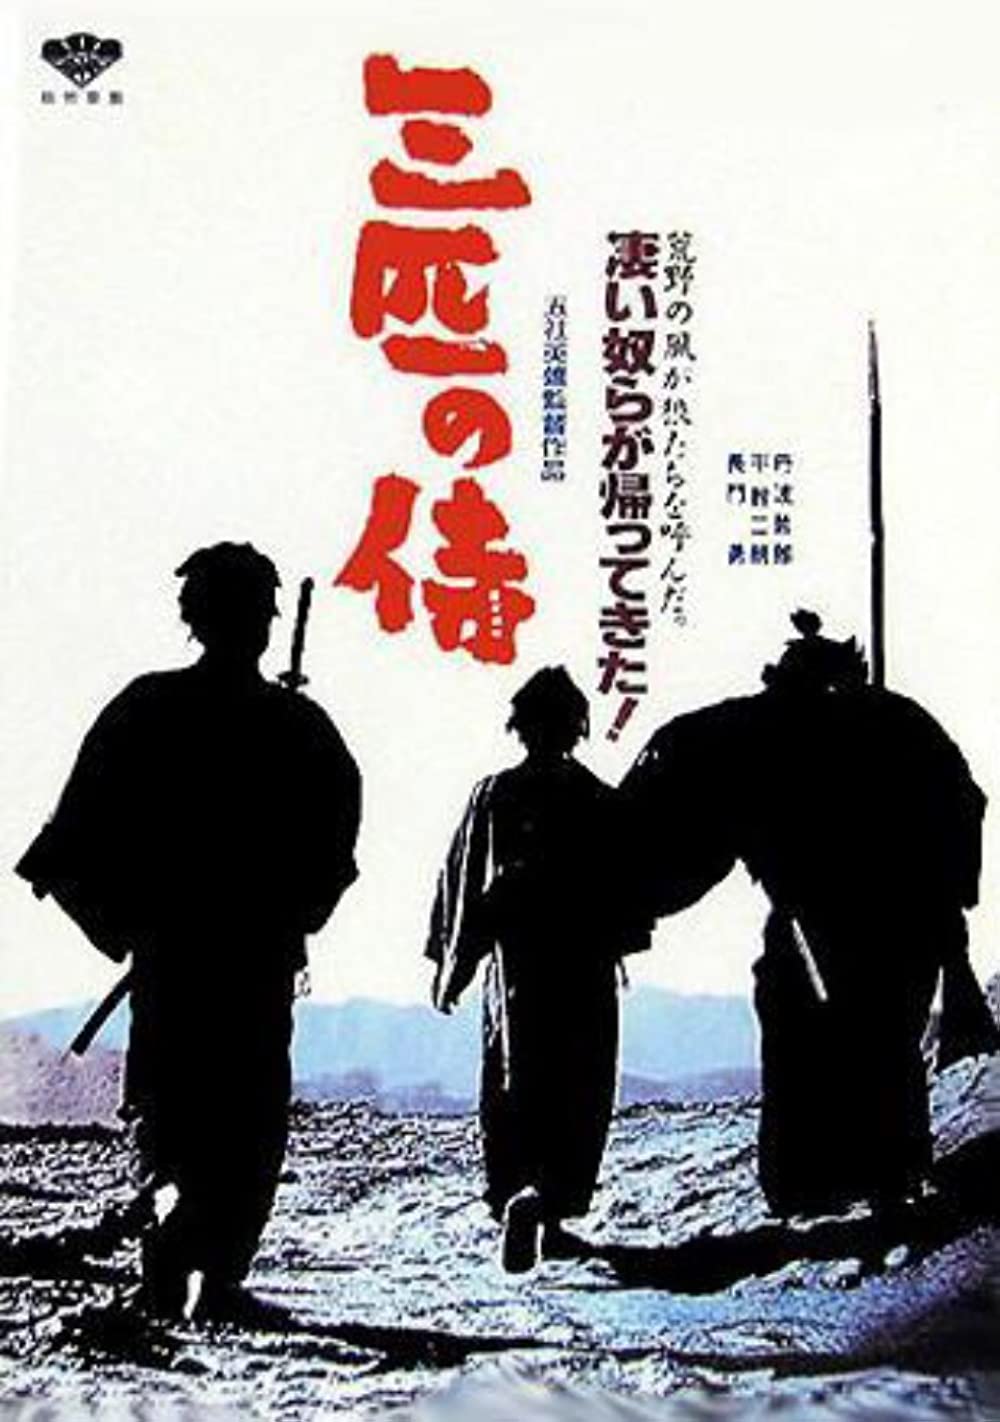 فيلم Three Outlaw Samurai 1964 مترجم اونلاين